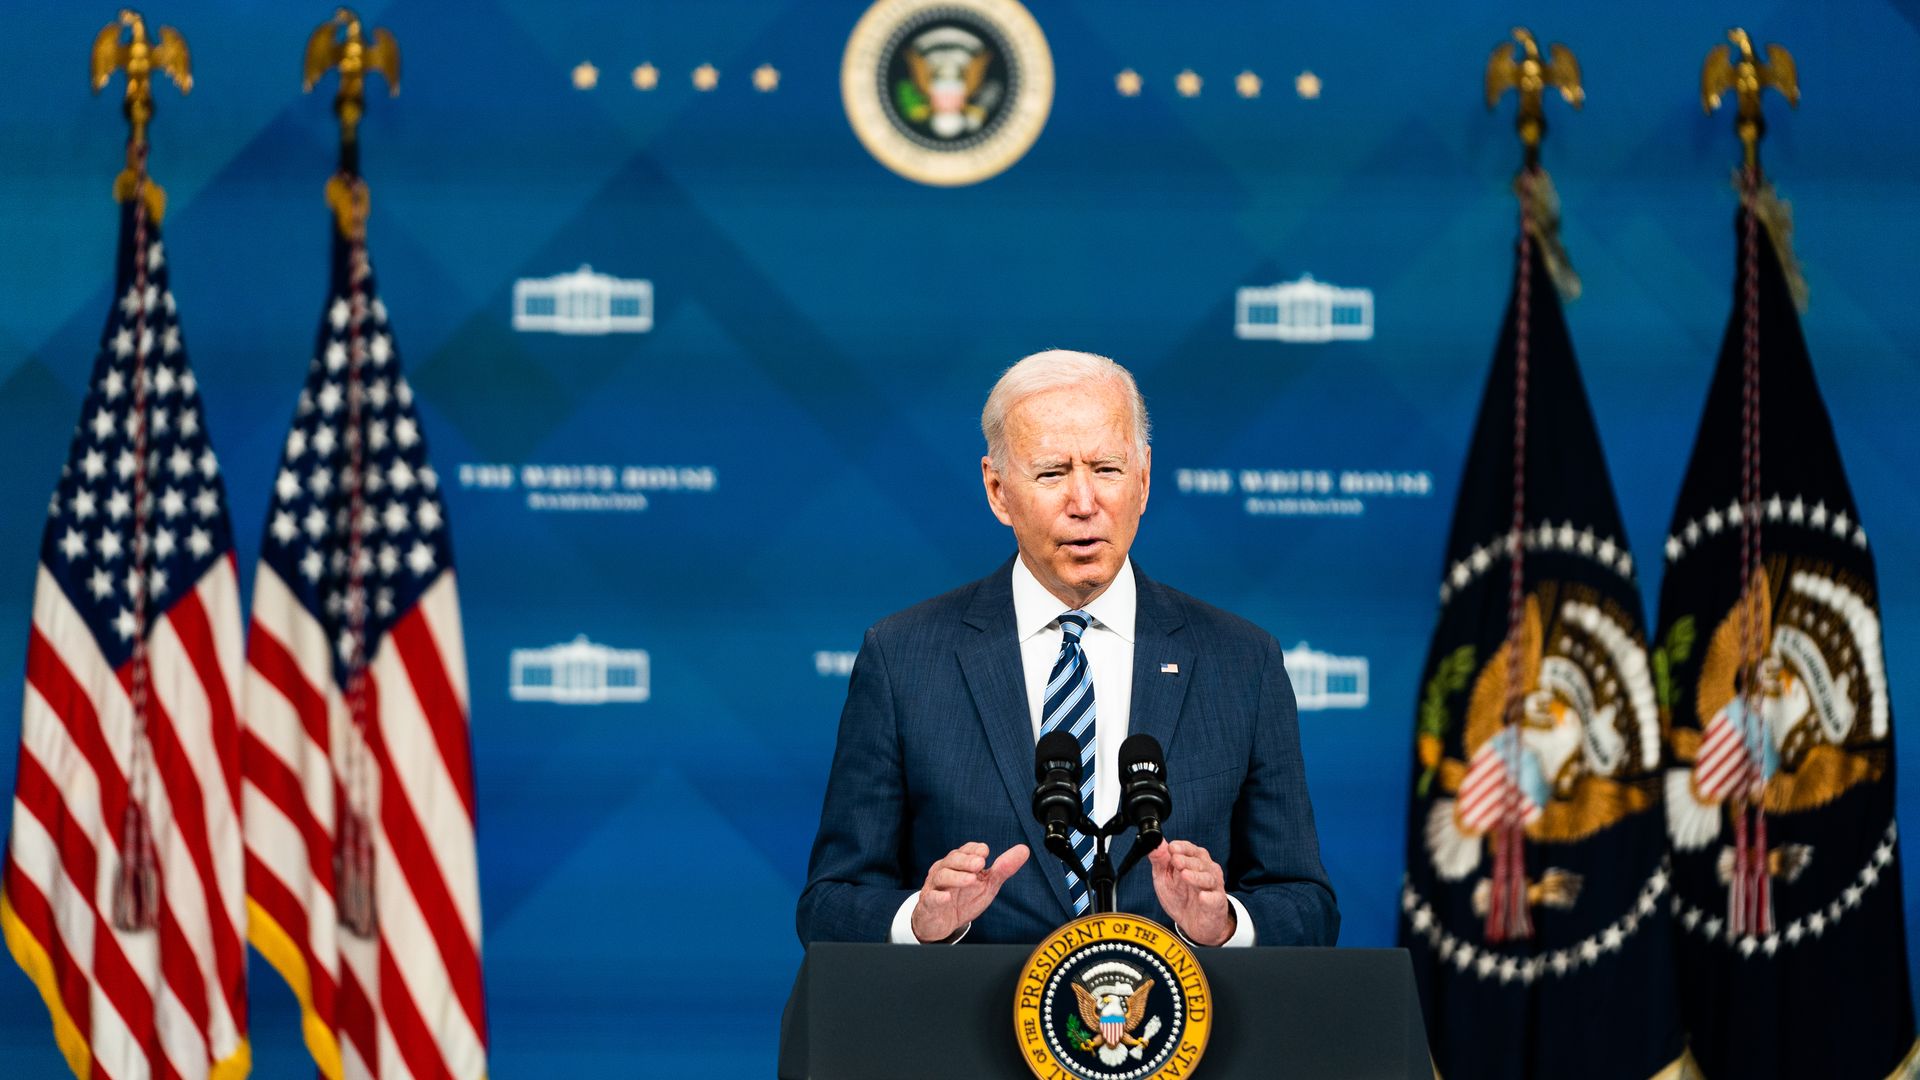 President Joe Biden speaking at the White House on Sept. 2.